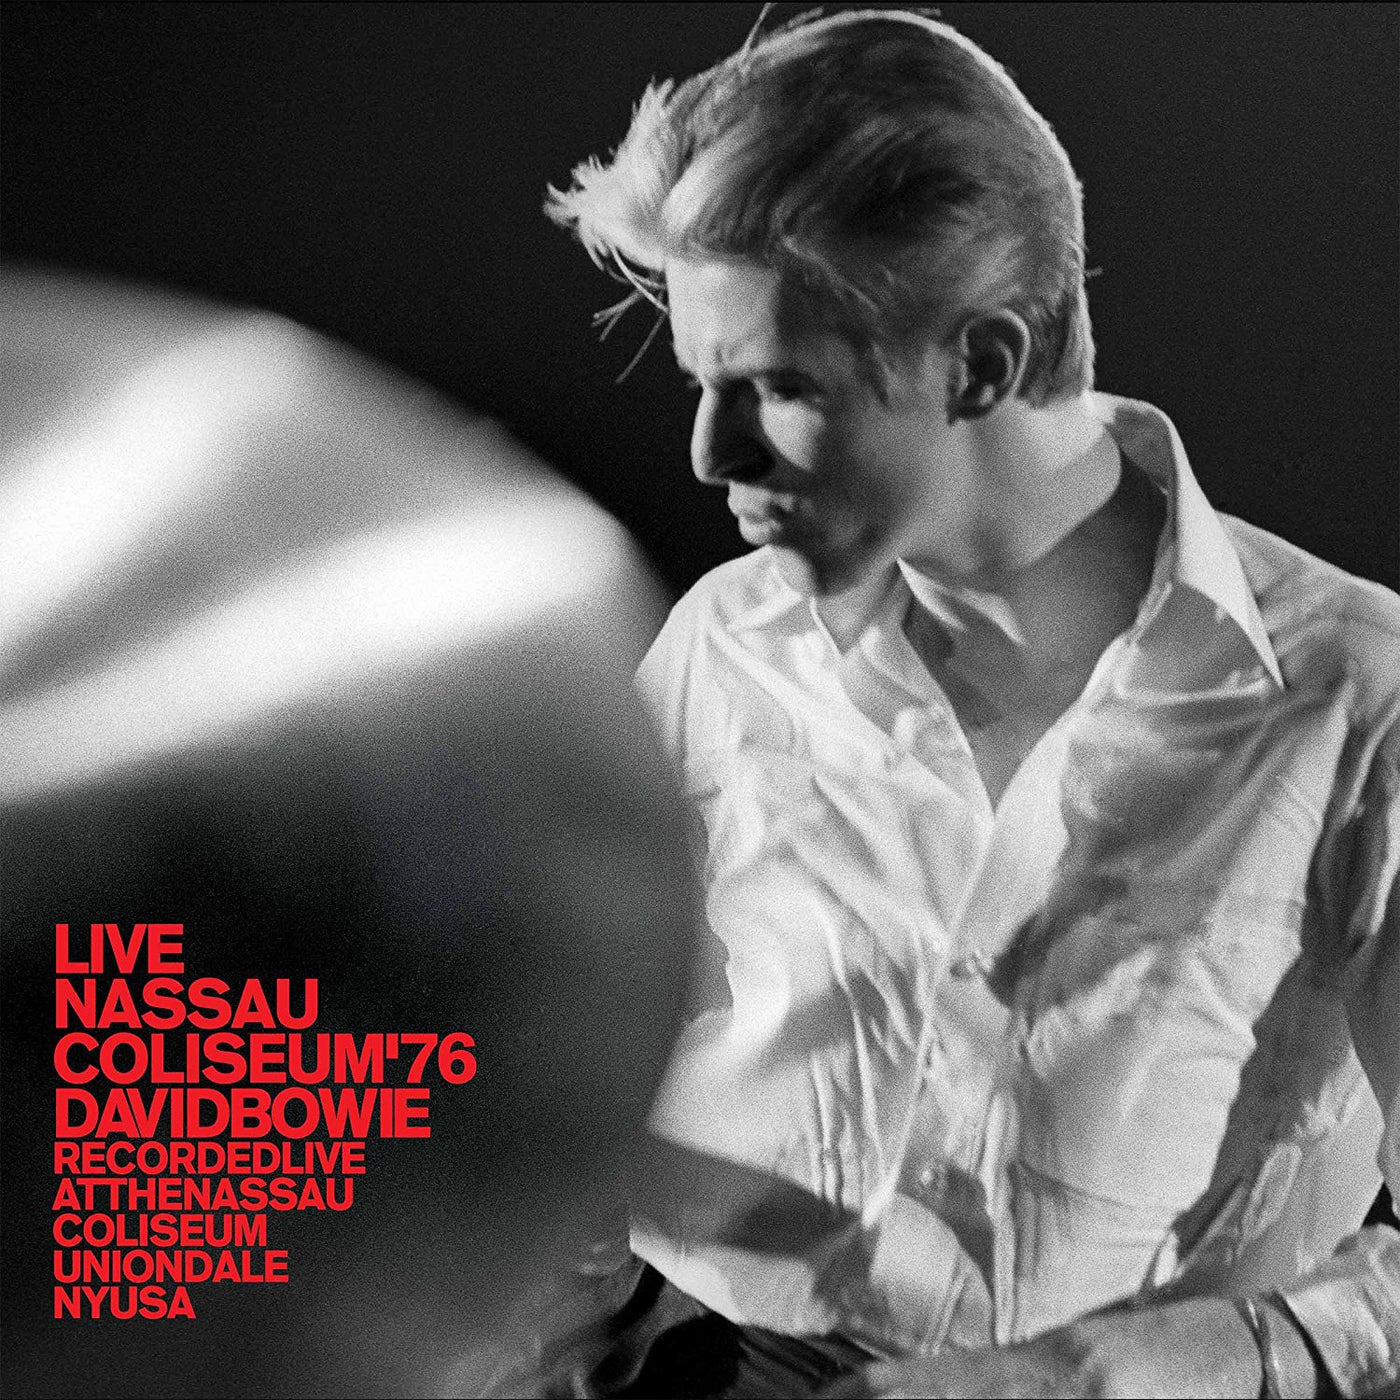 David Bowie - Live Nassau Coliseum